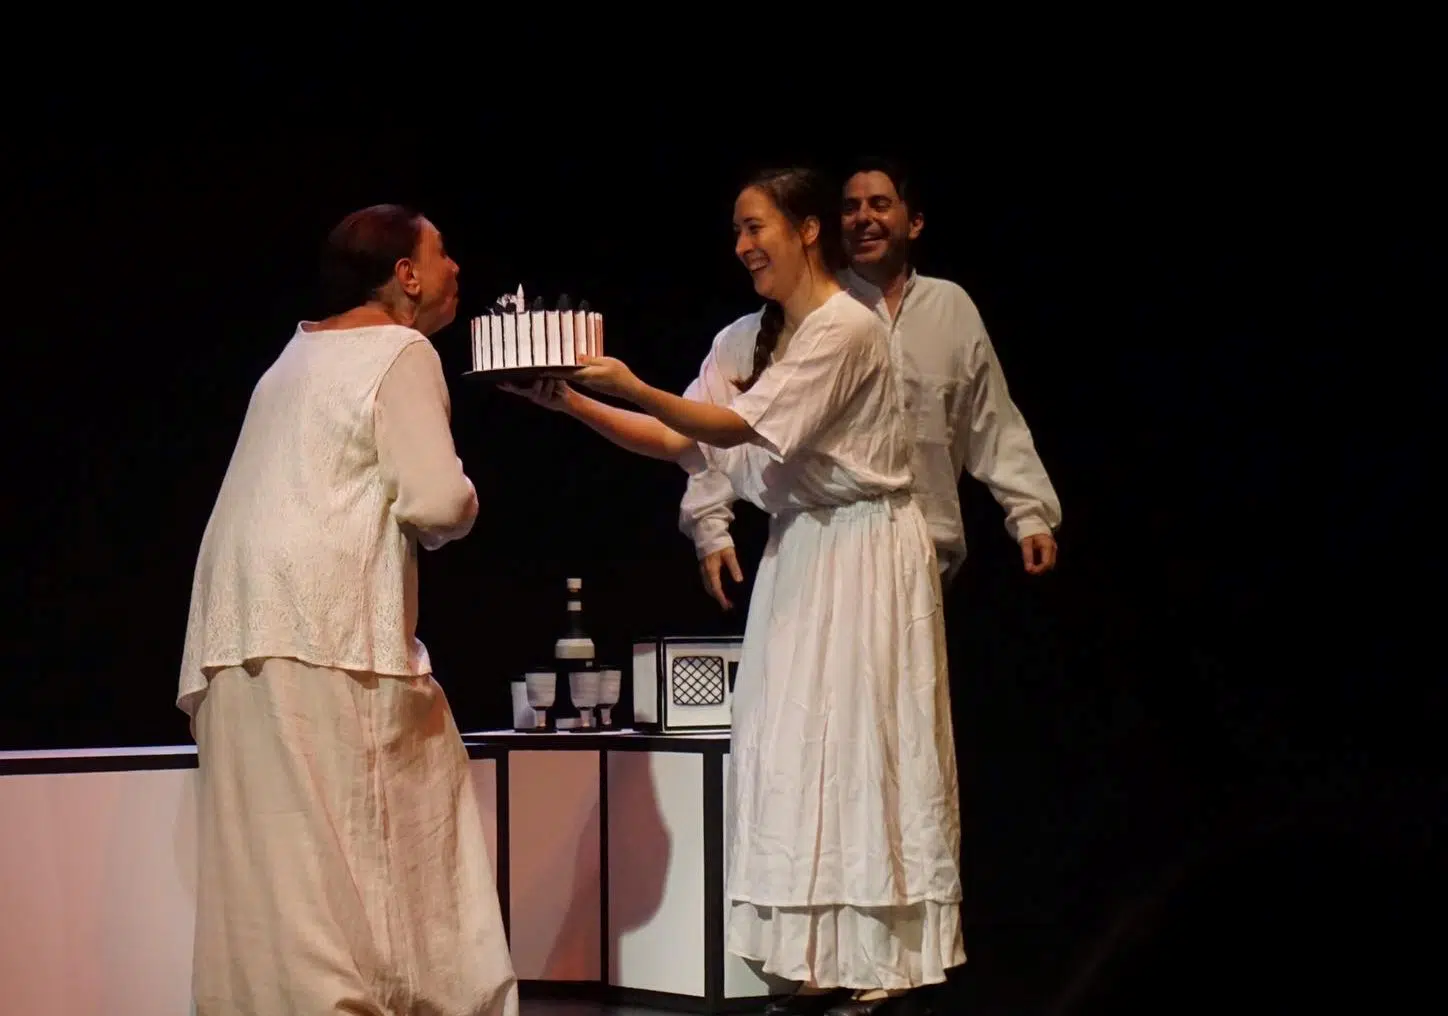 Η Πατρινή Κατερίνα Μαντέλη σκηνοθετεί το "Εγώ, η Λένγκω" - Πρεμιέρα στο θέατρο Βικτώρια